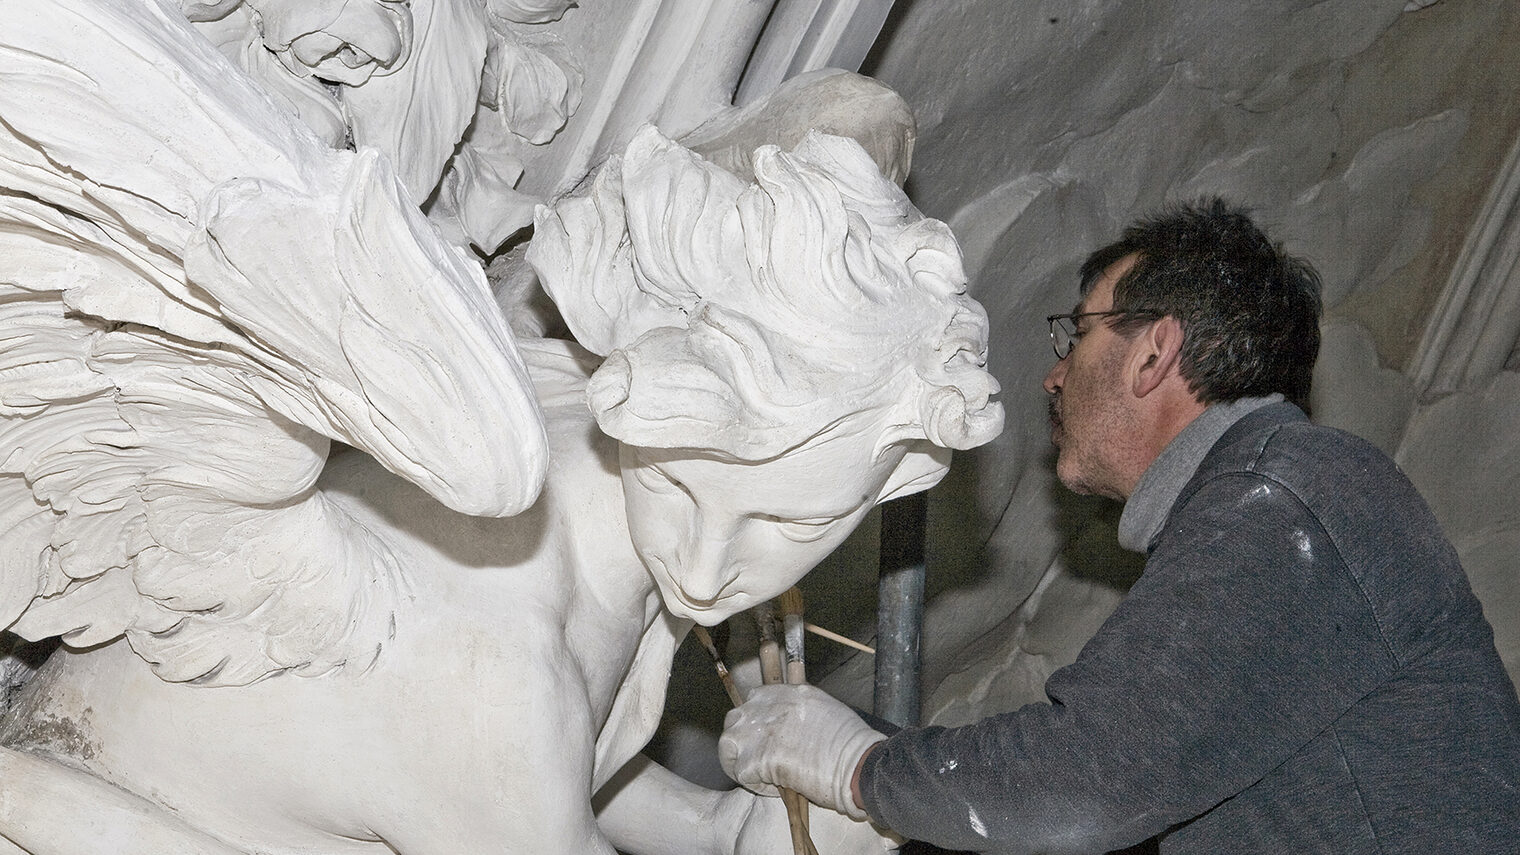 Auf dem Bild ist ein Restaurator bei der Konservierung und Restaurierung von Stuckelementen an der Apsis der Kollegienkirche Salzburg zu sehen.